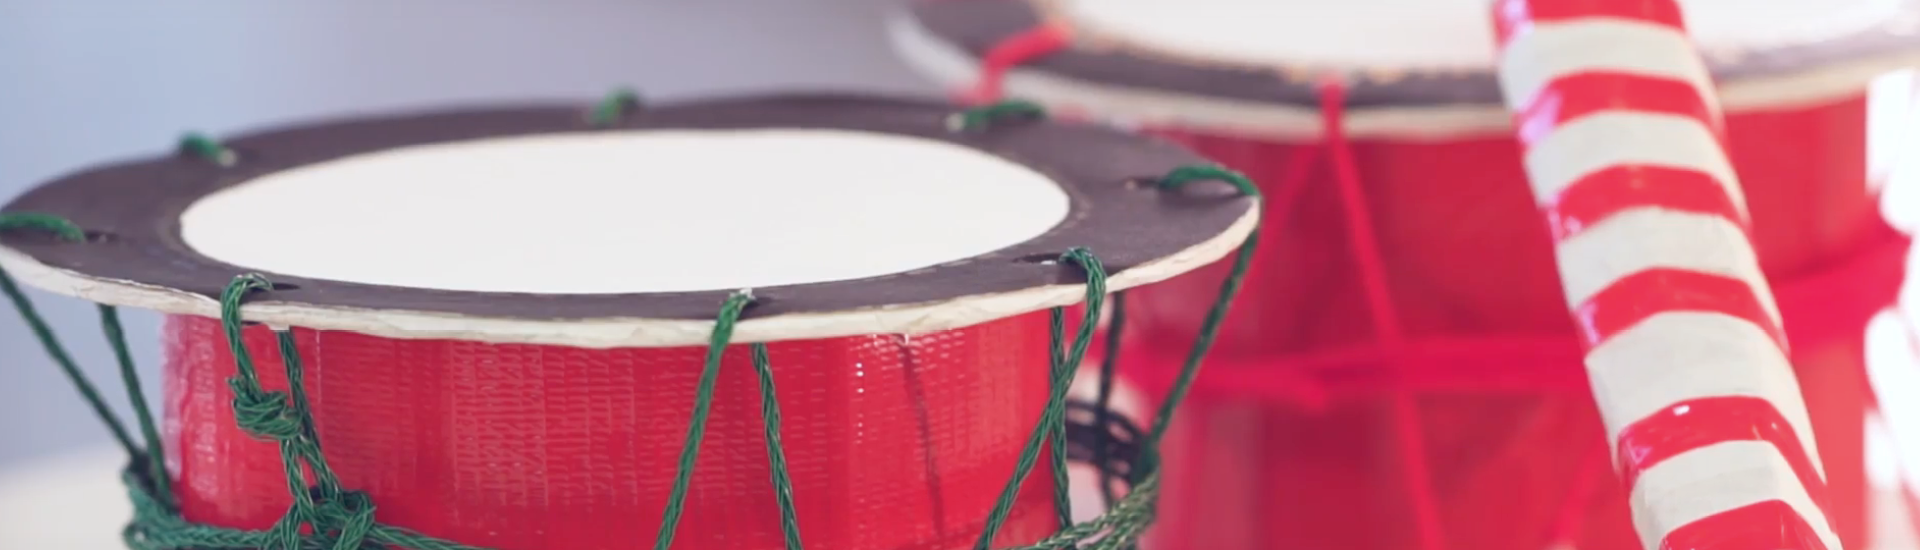 Detalhe de dois taikos - grandes tambores vermelhos.